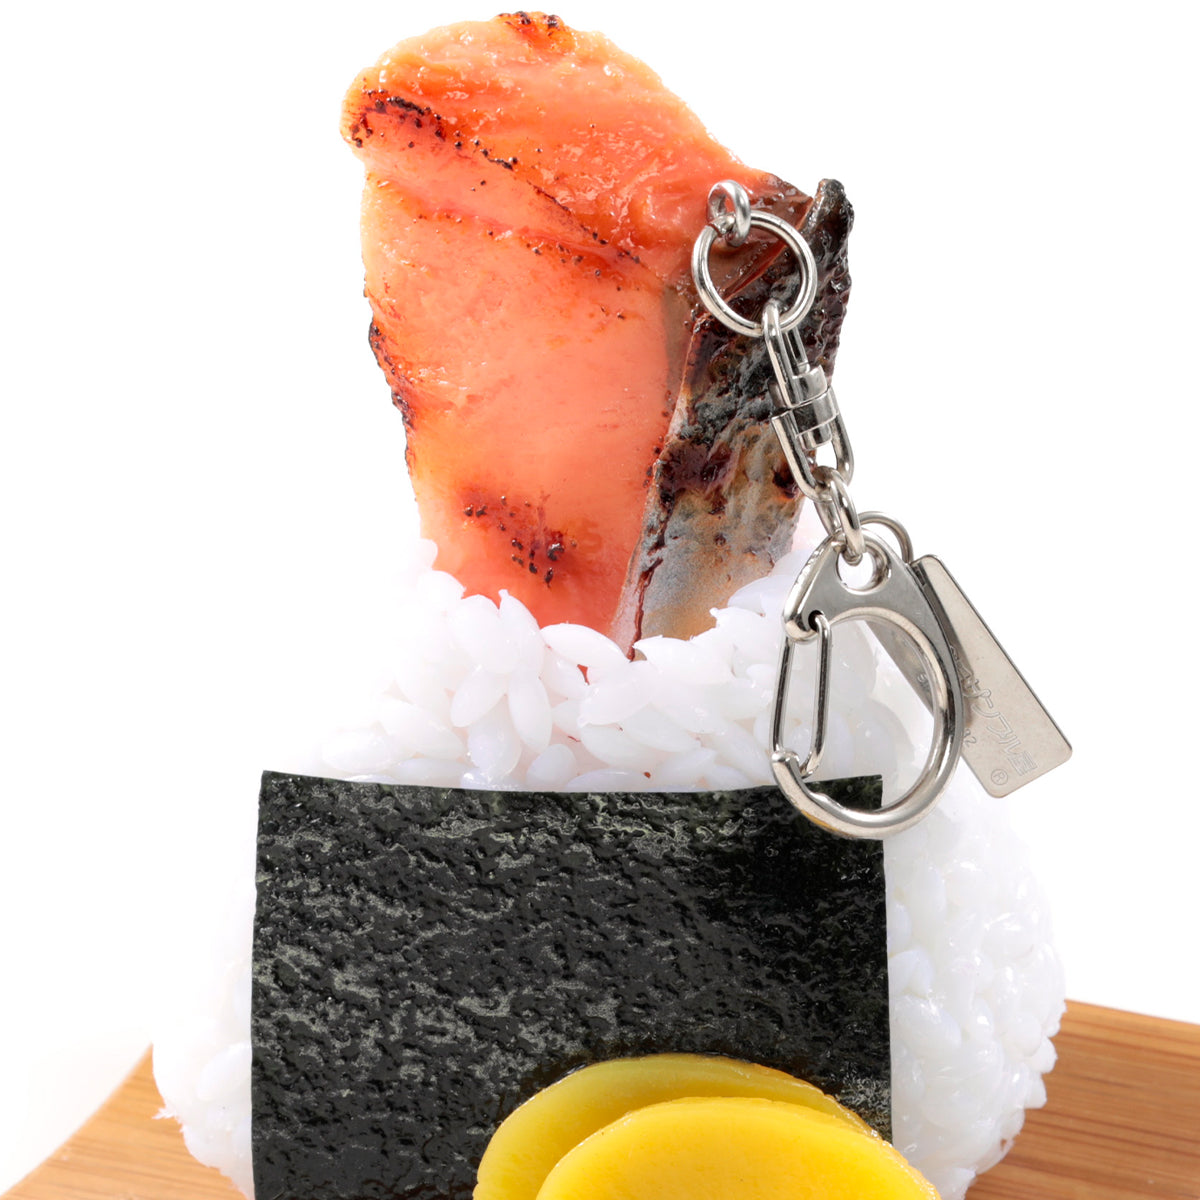 これは元祖食品サンプル屋の「おでかけおにぎり鮭」の鮭のキーリングの商品写真です。